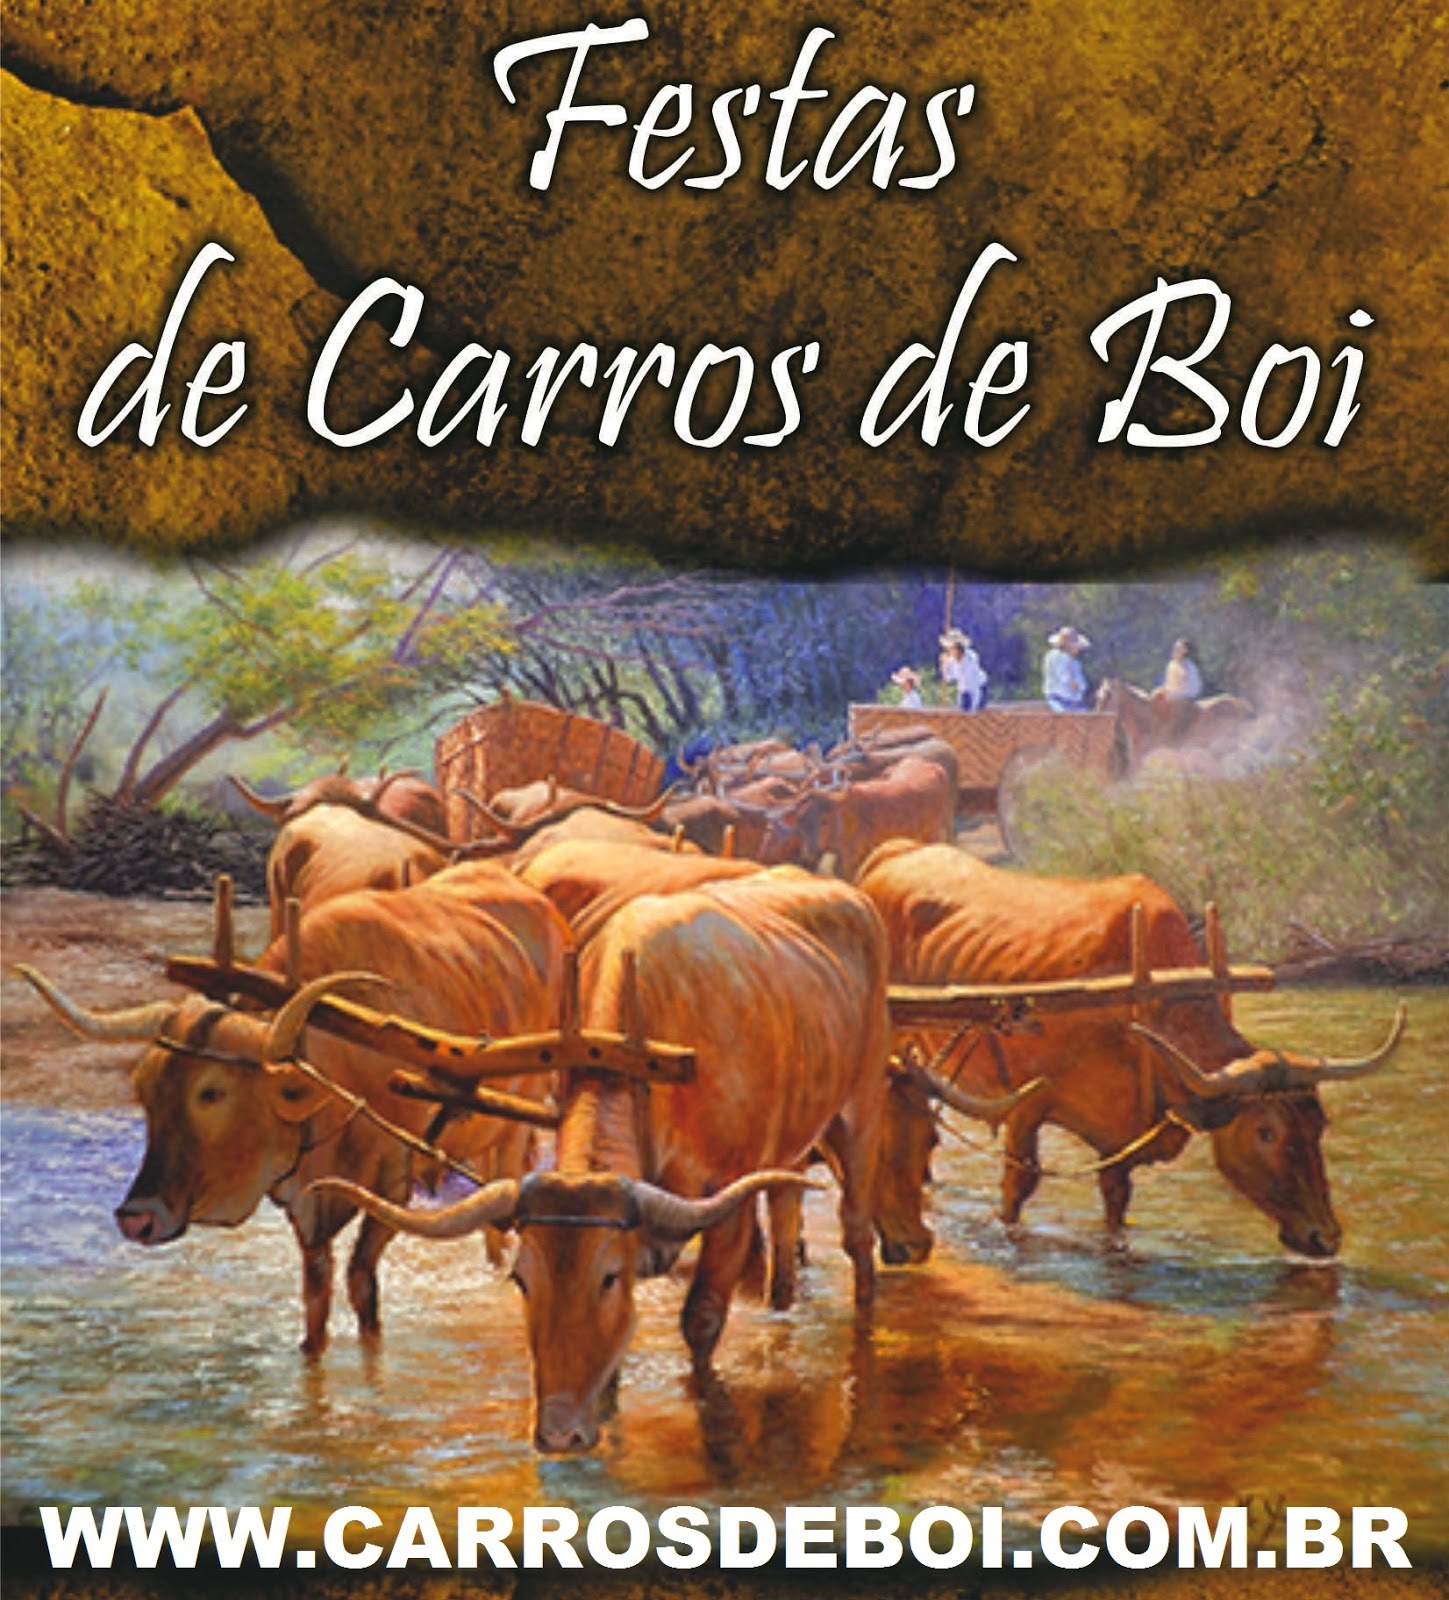 http://www.carrosdeboi.com.br/